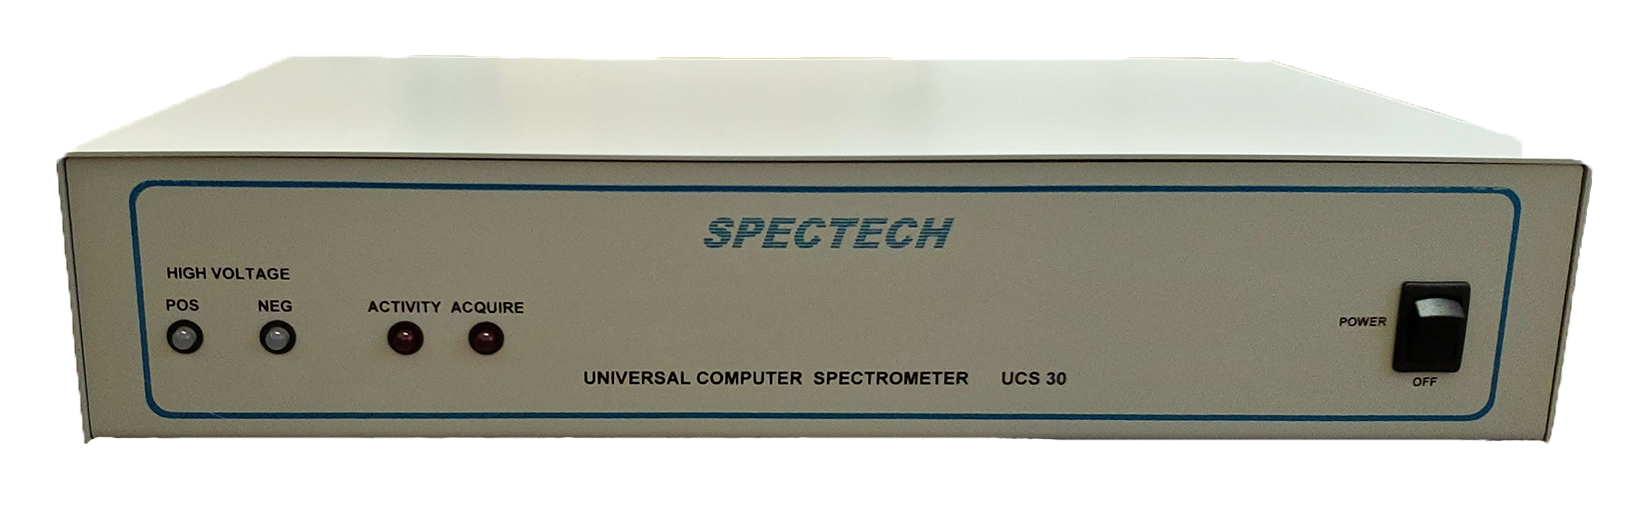 UCS30 gamma spectrometer